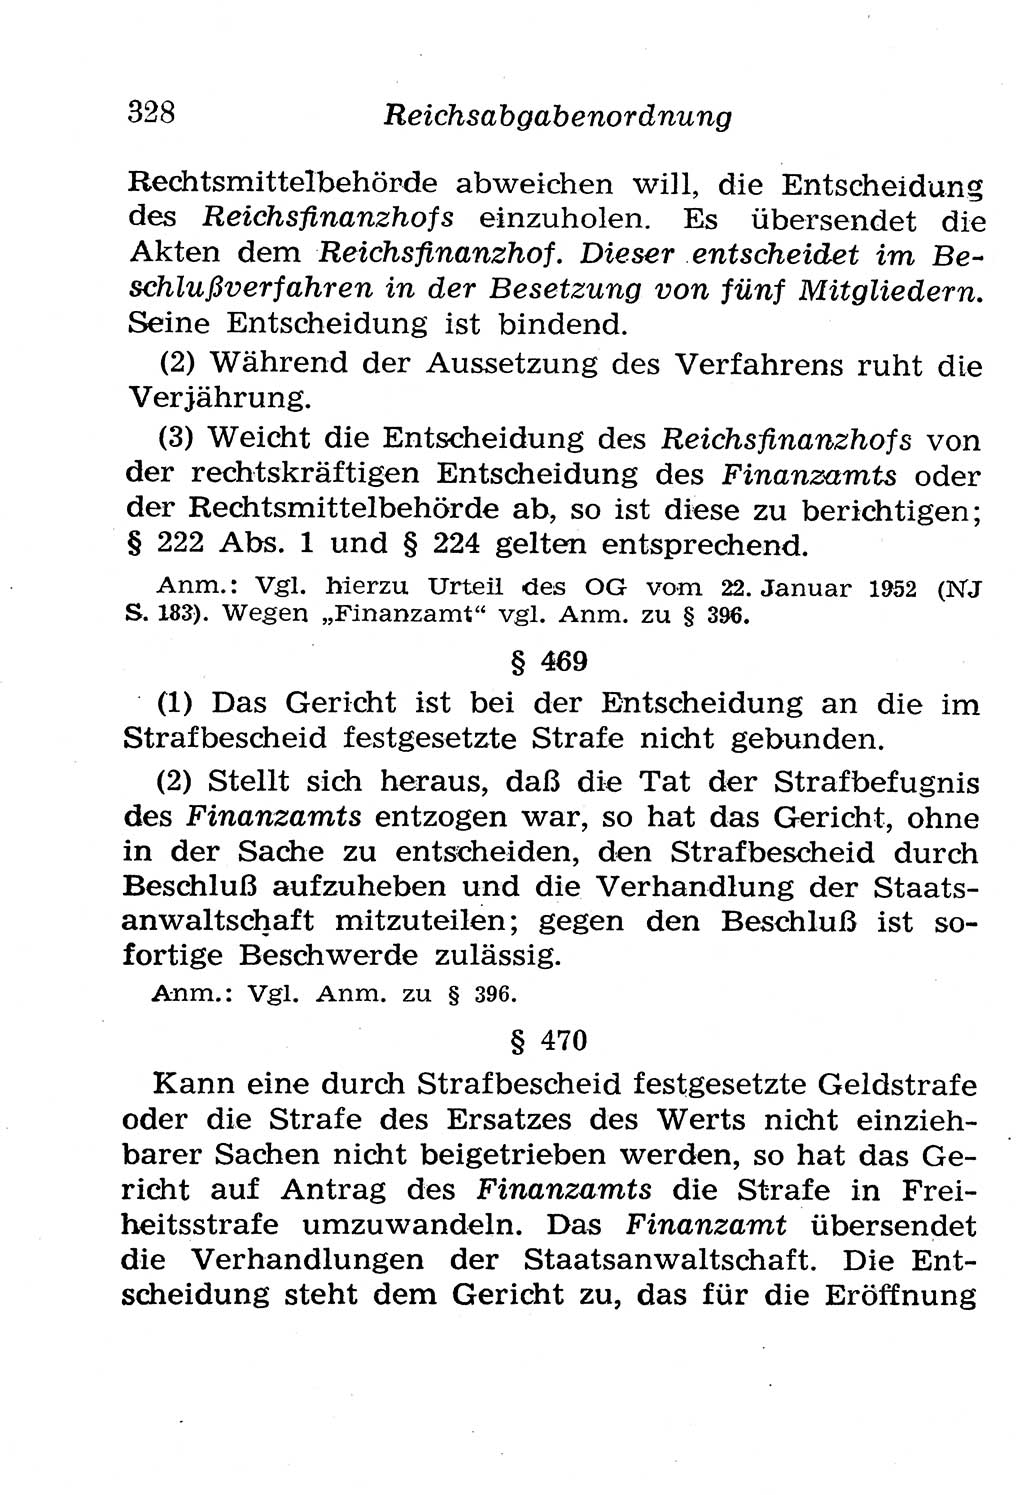 Strafgesetzbuch (StGB) und andere Strafgesetze [Deutsche Demokratische Republik (DDR)] 1958, Seite 328 (StGB Strafges. DDR 1958, S. 328)